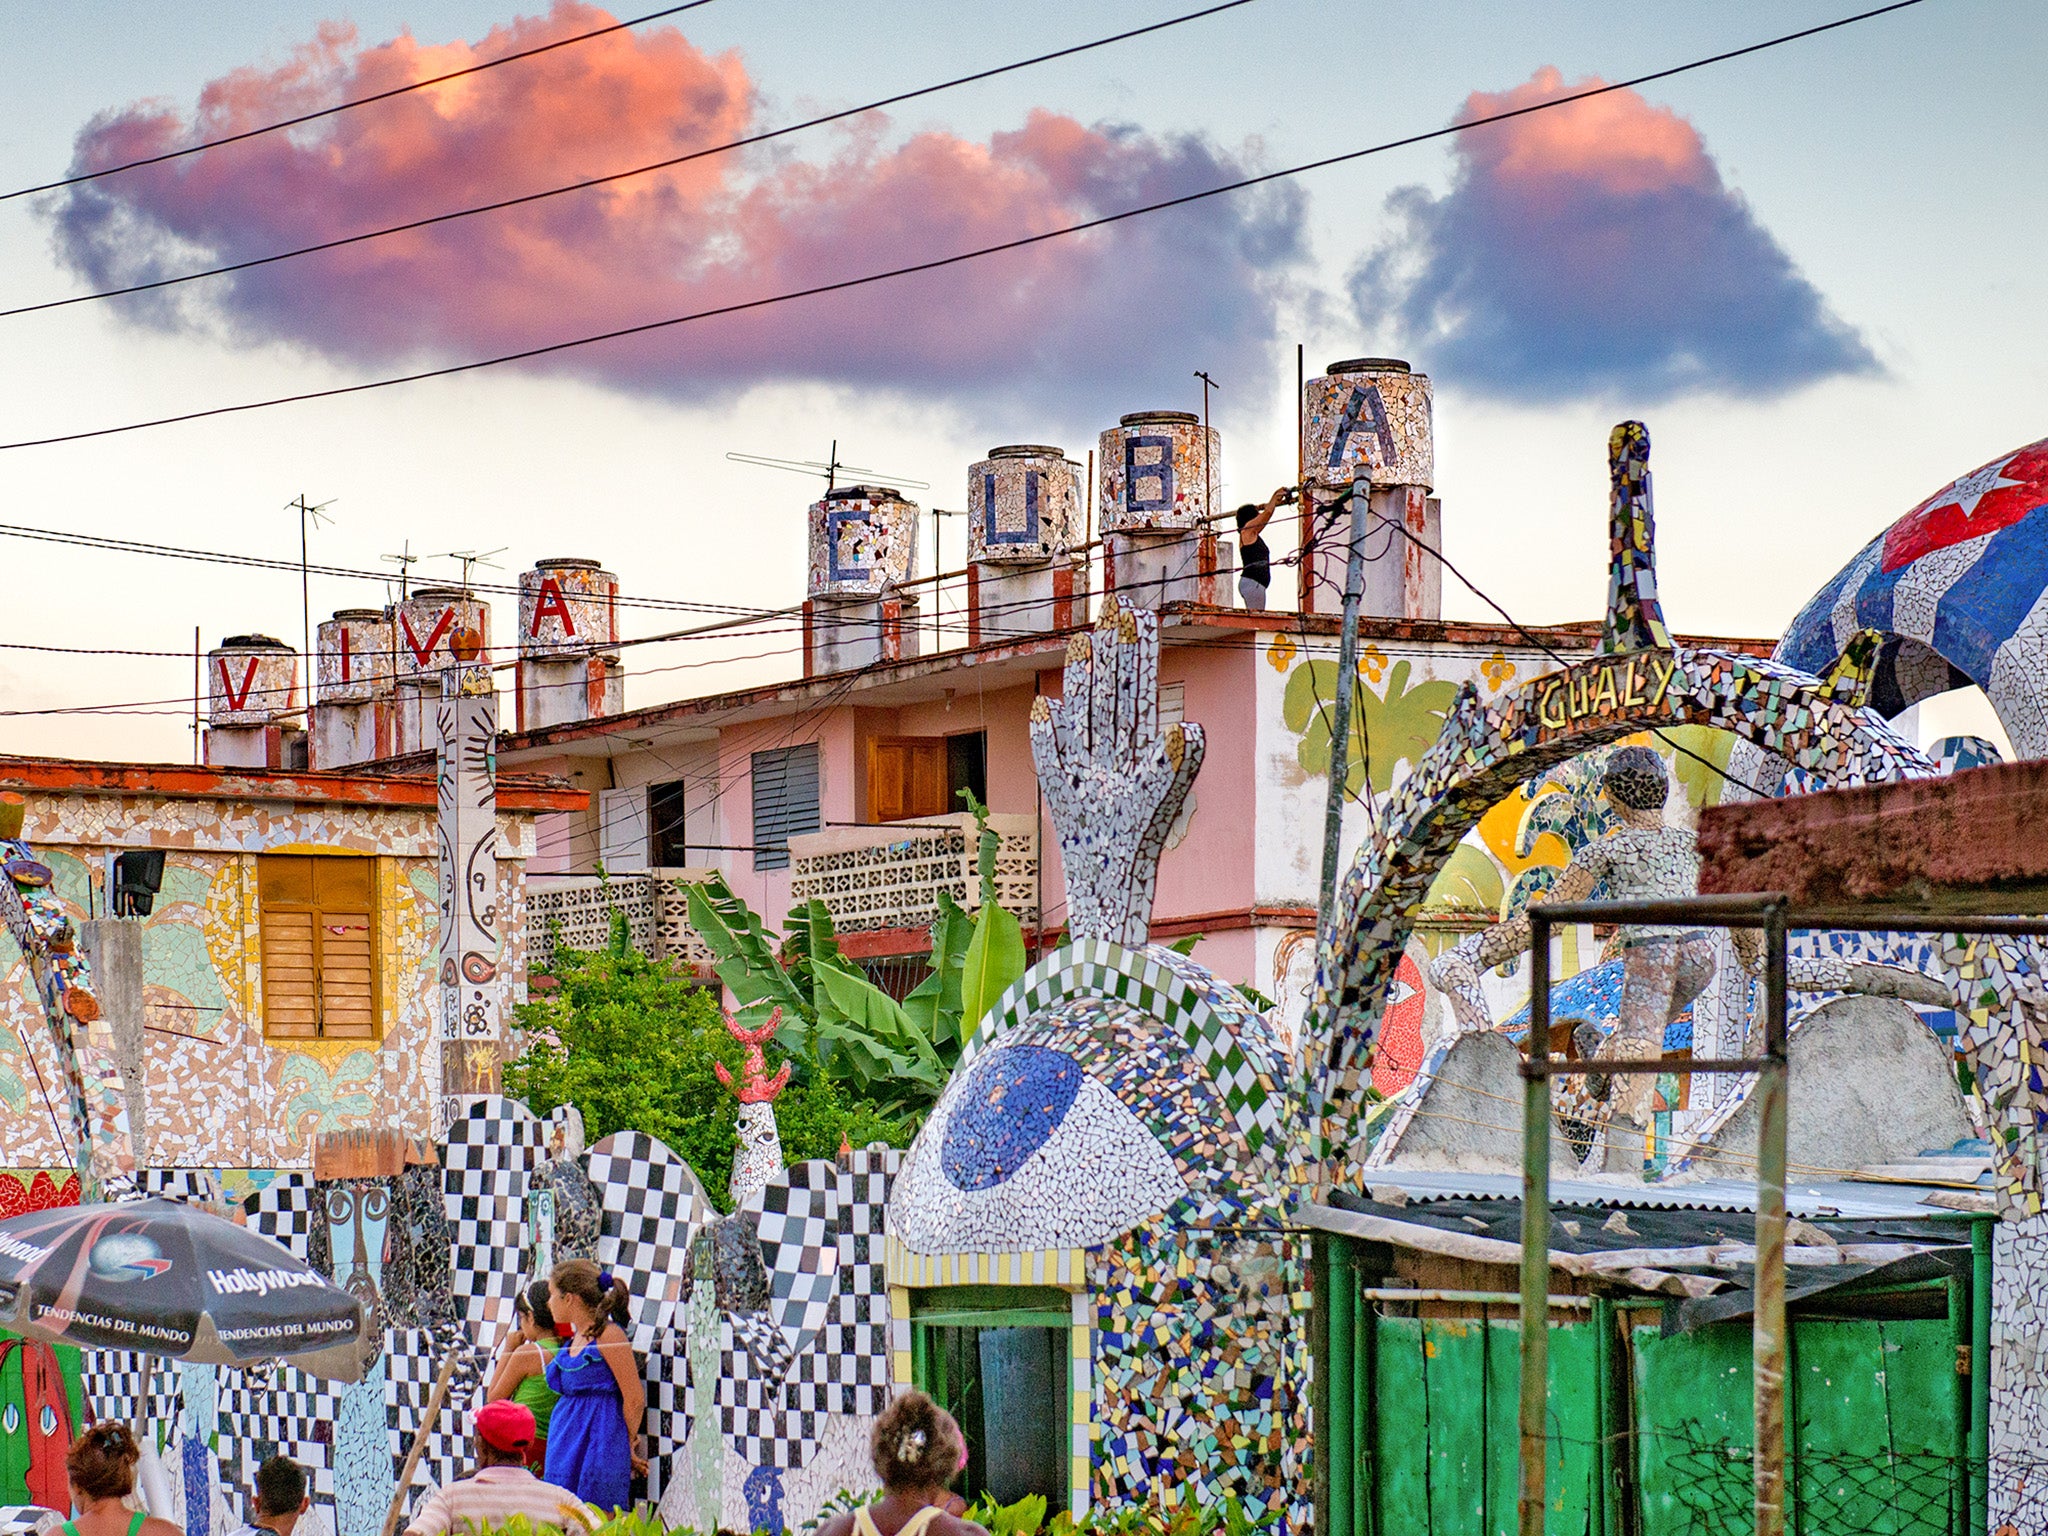 José Fuster’s workshop and residence in Jaimanitas, outside of Havana